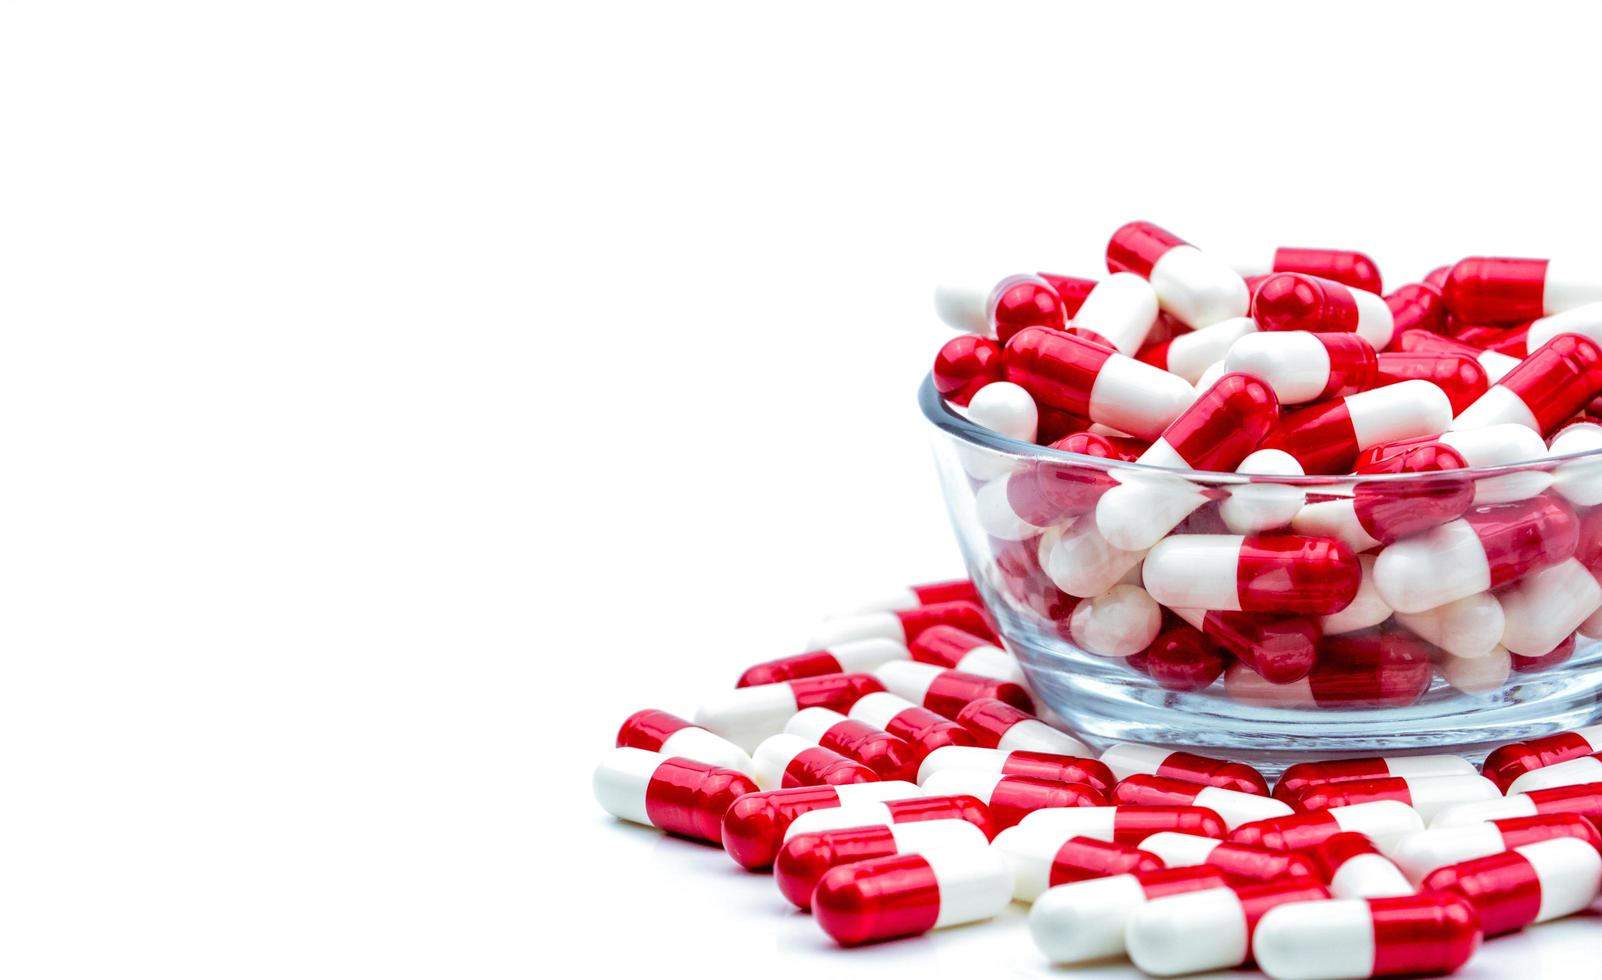 röda, vita antibiotikakapslar piller i glasskål och några på vit bakgrund med kopia utrymme. läkemedelsresistens koncept. antibiotikadroganvändning med rimligt och globalt hälsokoncept. foto